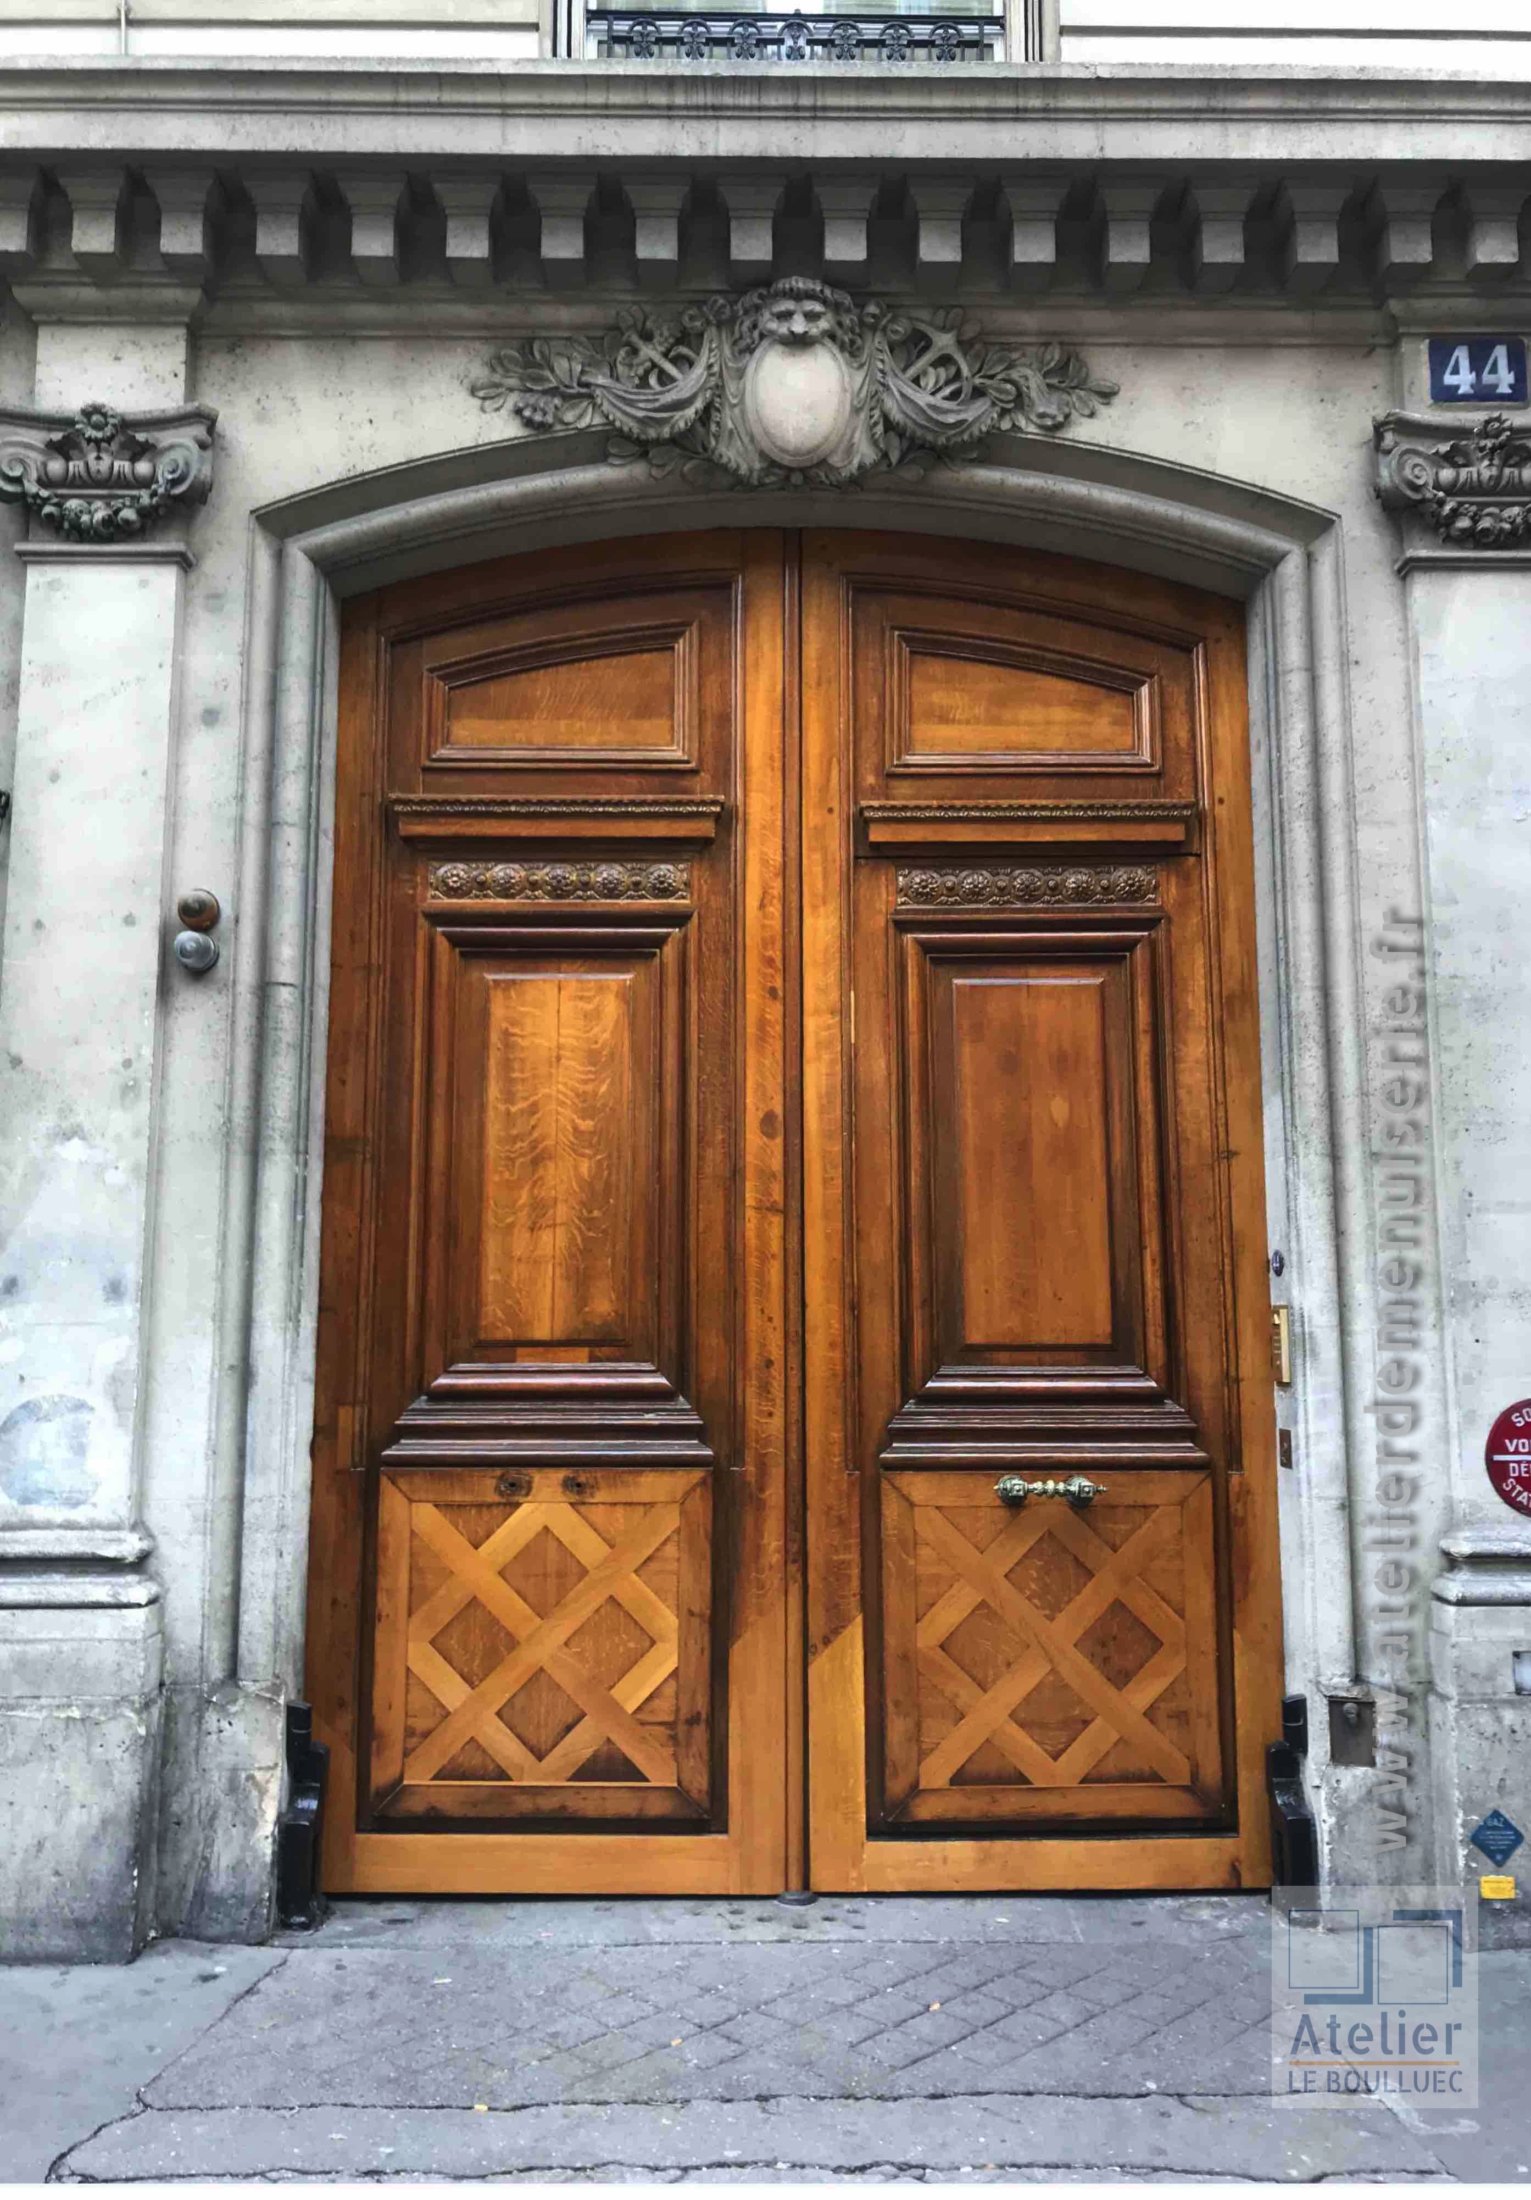 Porte Cochère Style Louis XVI - 44 RUE DU LOUVRE PARIS 1